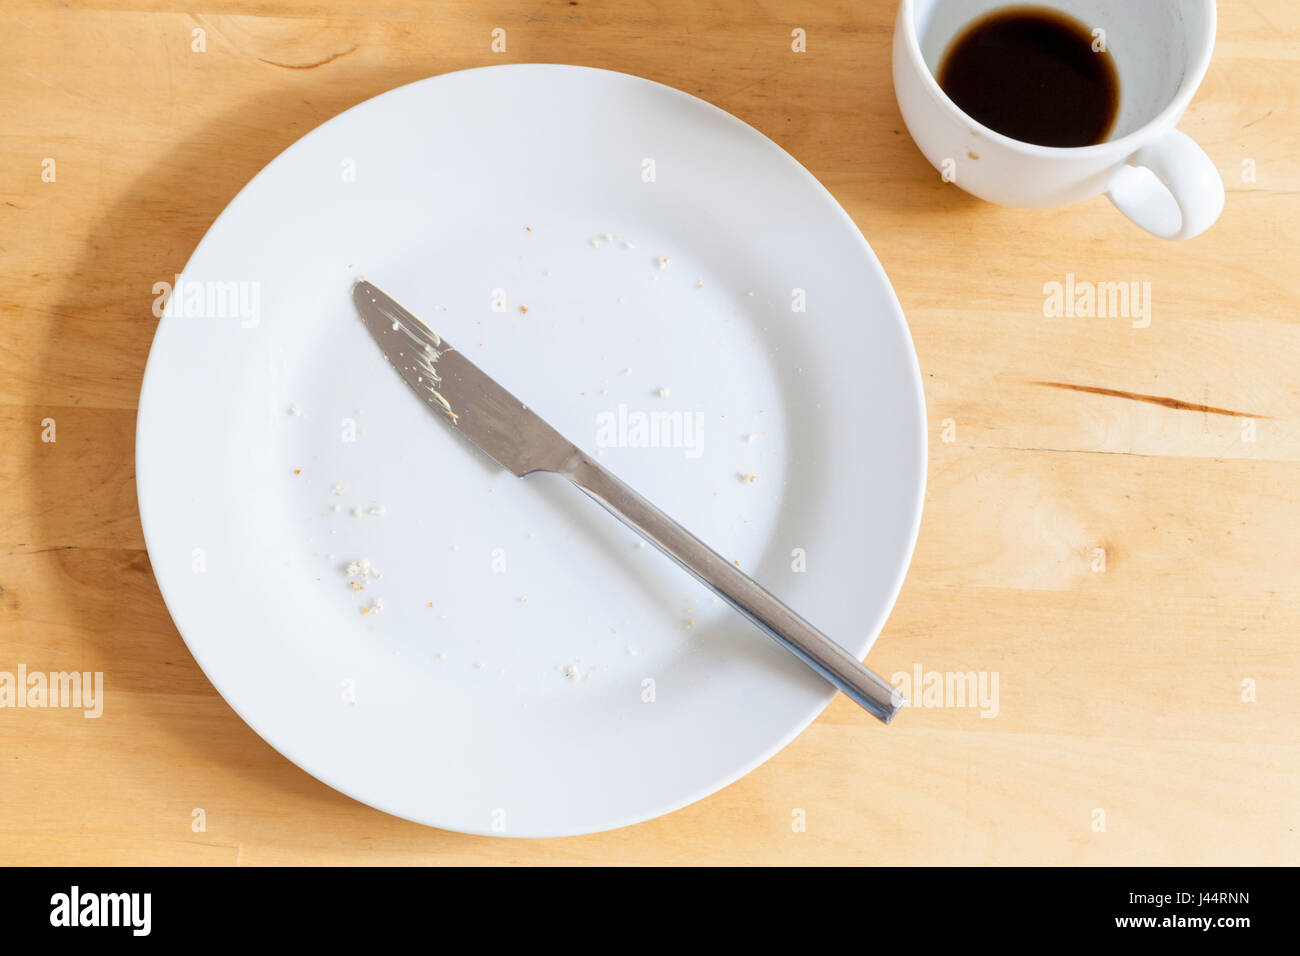 Fini de manger. Les restes ; une plaque avec des miettes, un couteau utilisé et la tasse de café vide après le petit-déjeuner ou snack en milieu de matinée Banque D'Images